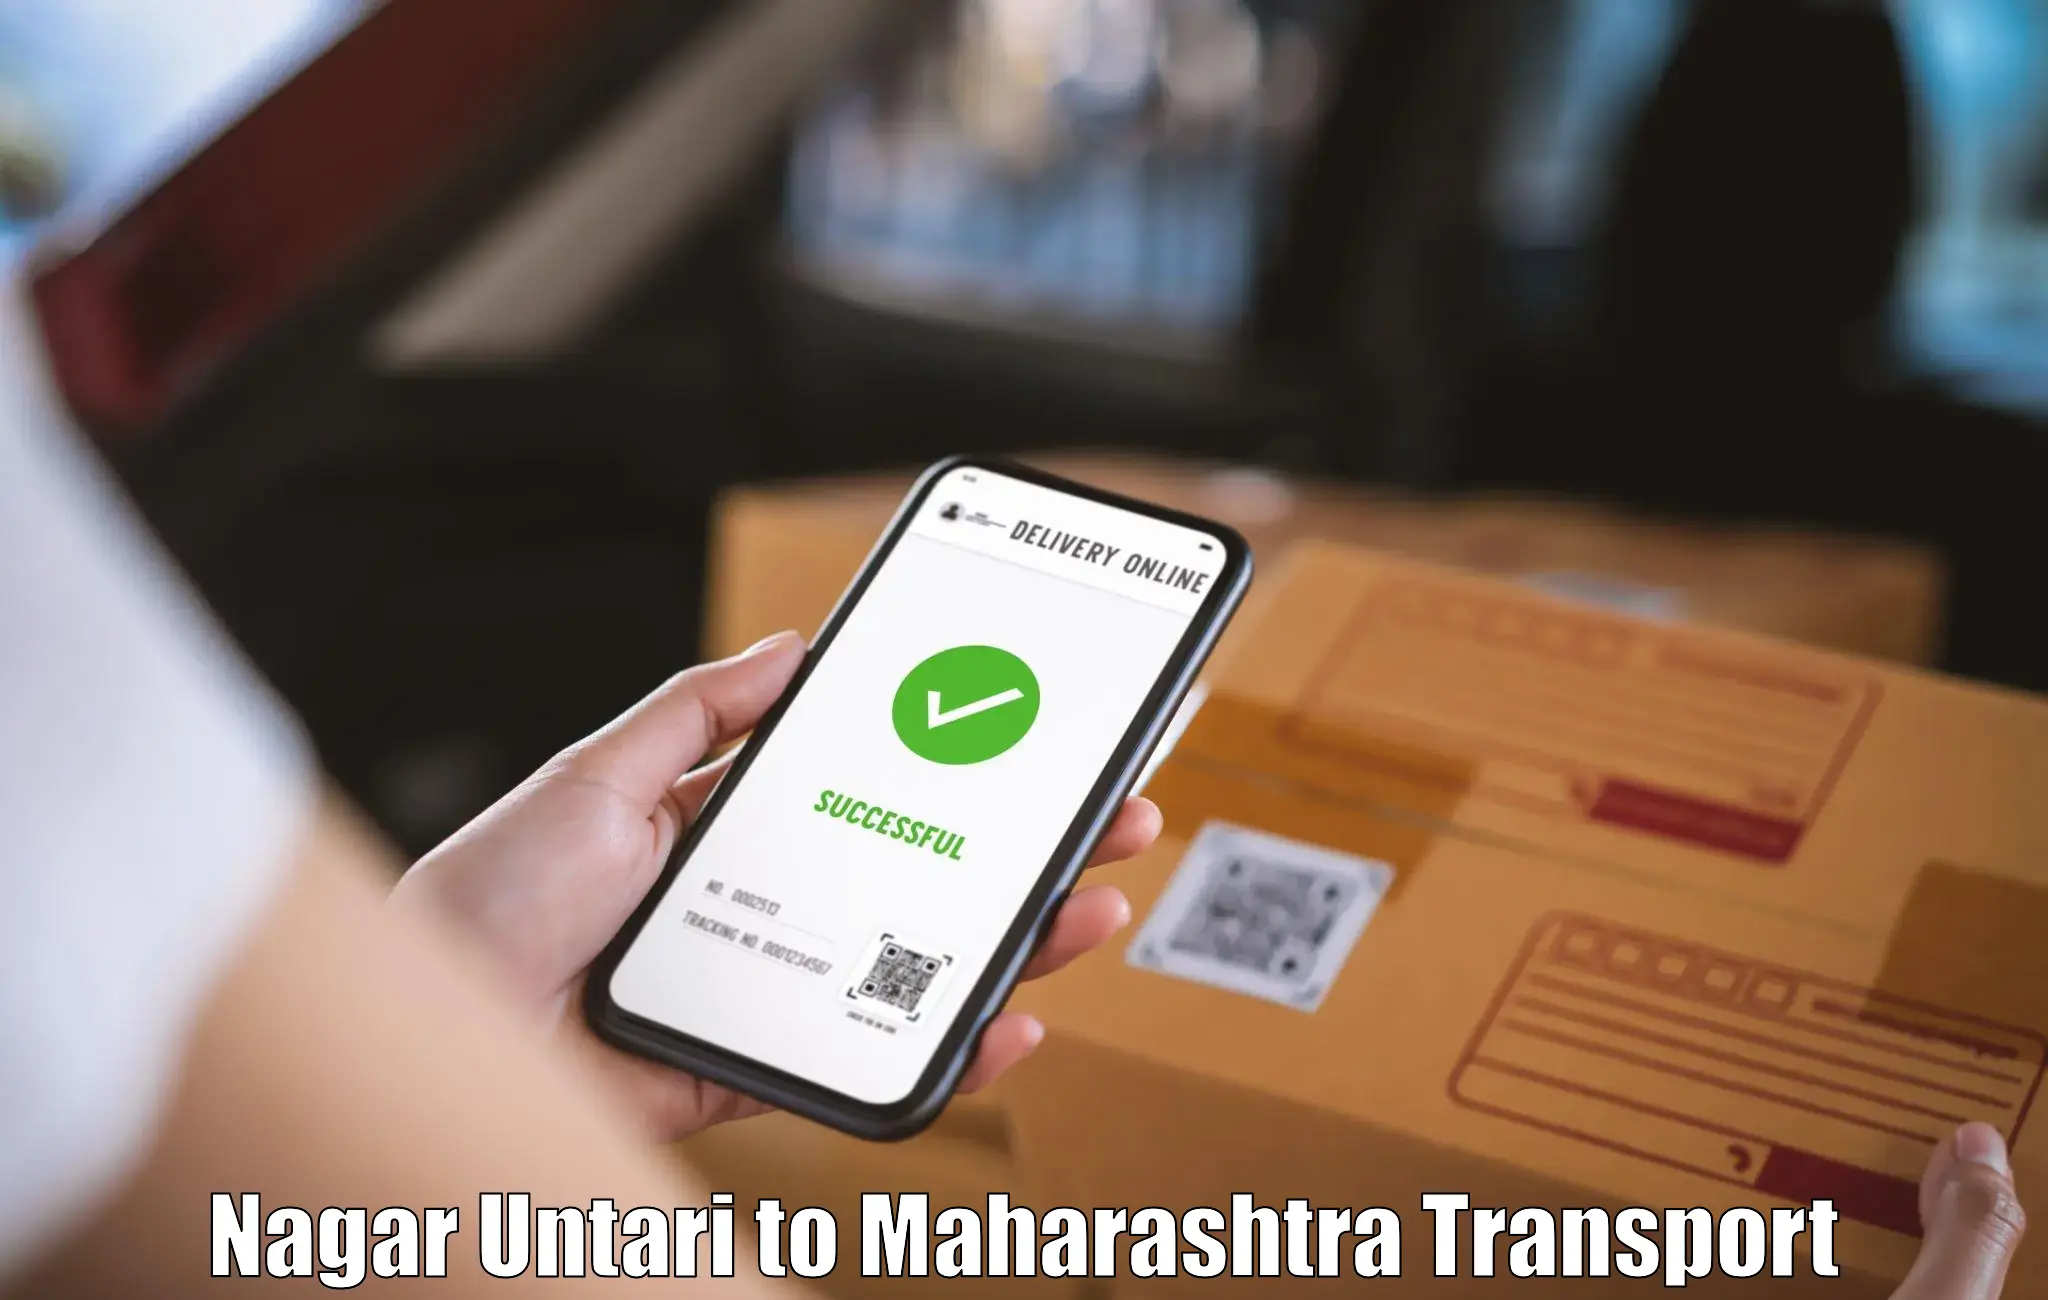 International cargo transportation services Nagar Untari to Chandrapur